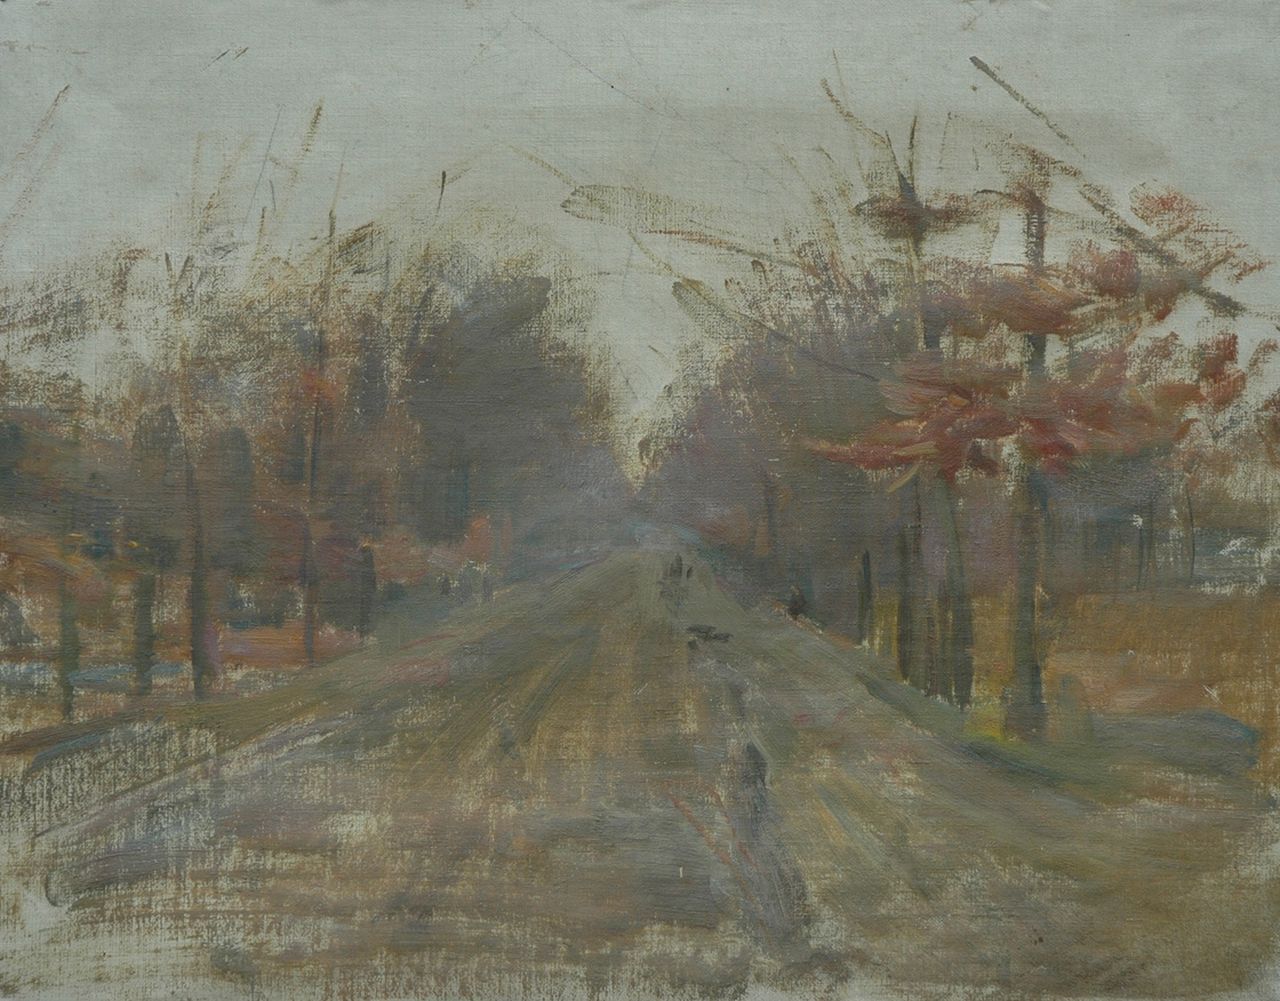 Mauve jr. A.R.  | Anton Rudolf Mauve jr., Country road, oil on canvas 43.5 x 53.5 cm